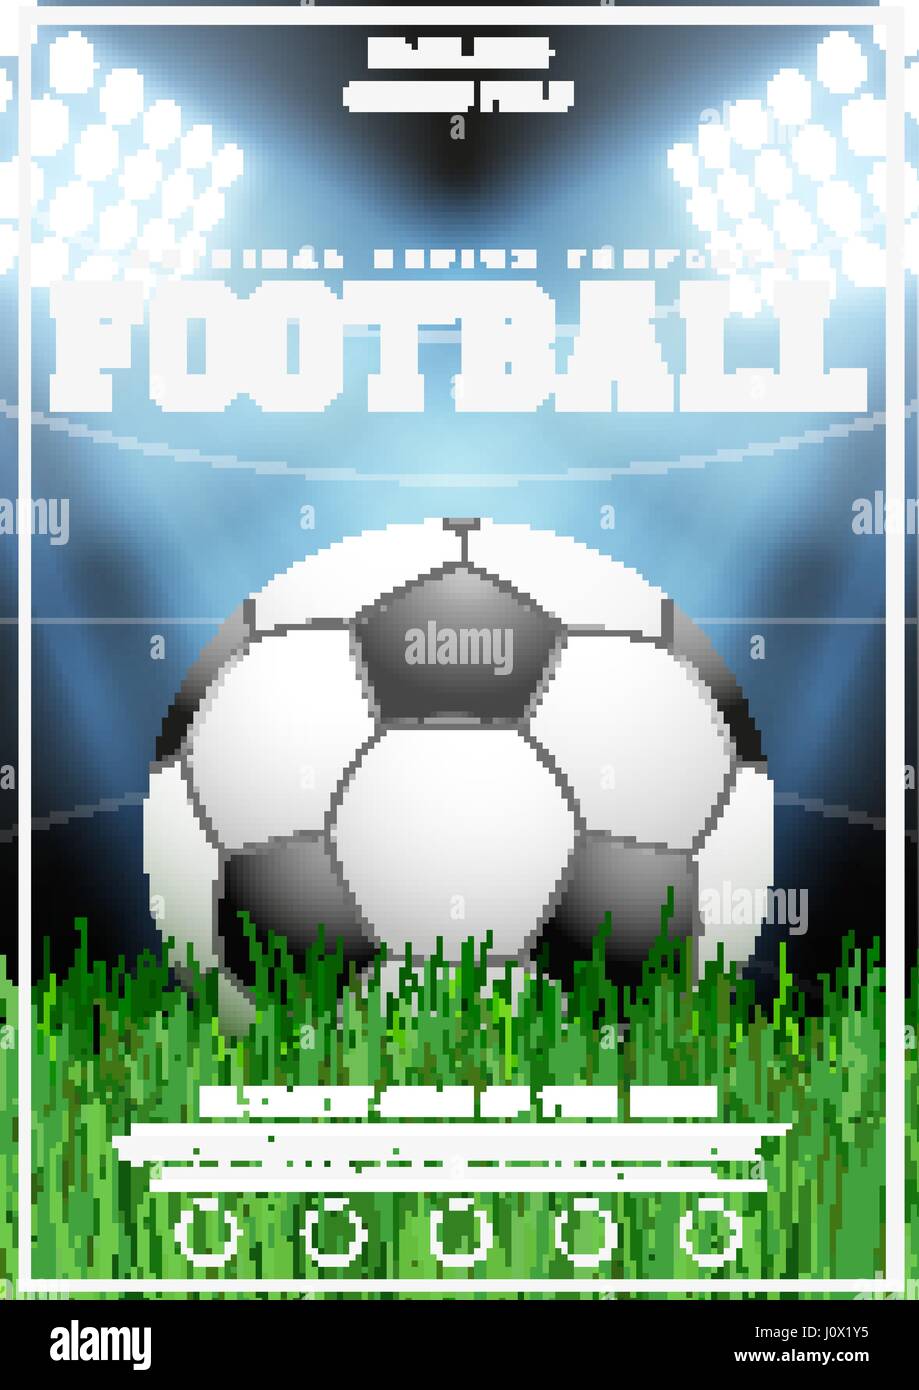 Plakat-Vorlage für Fußball-Turnier Stock-Vektorgrafik - Alamy